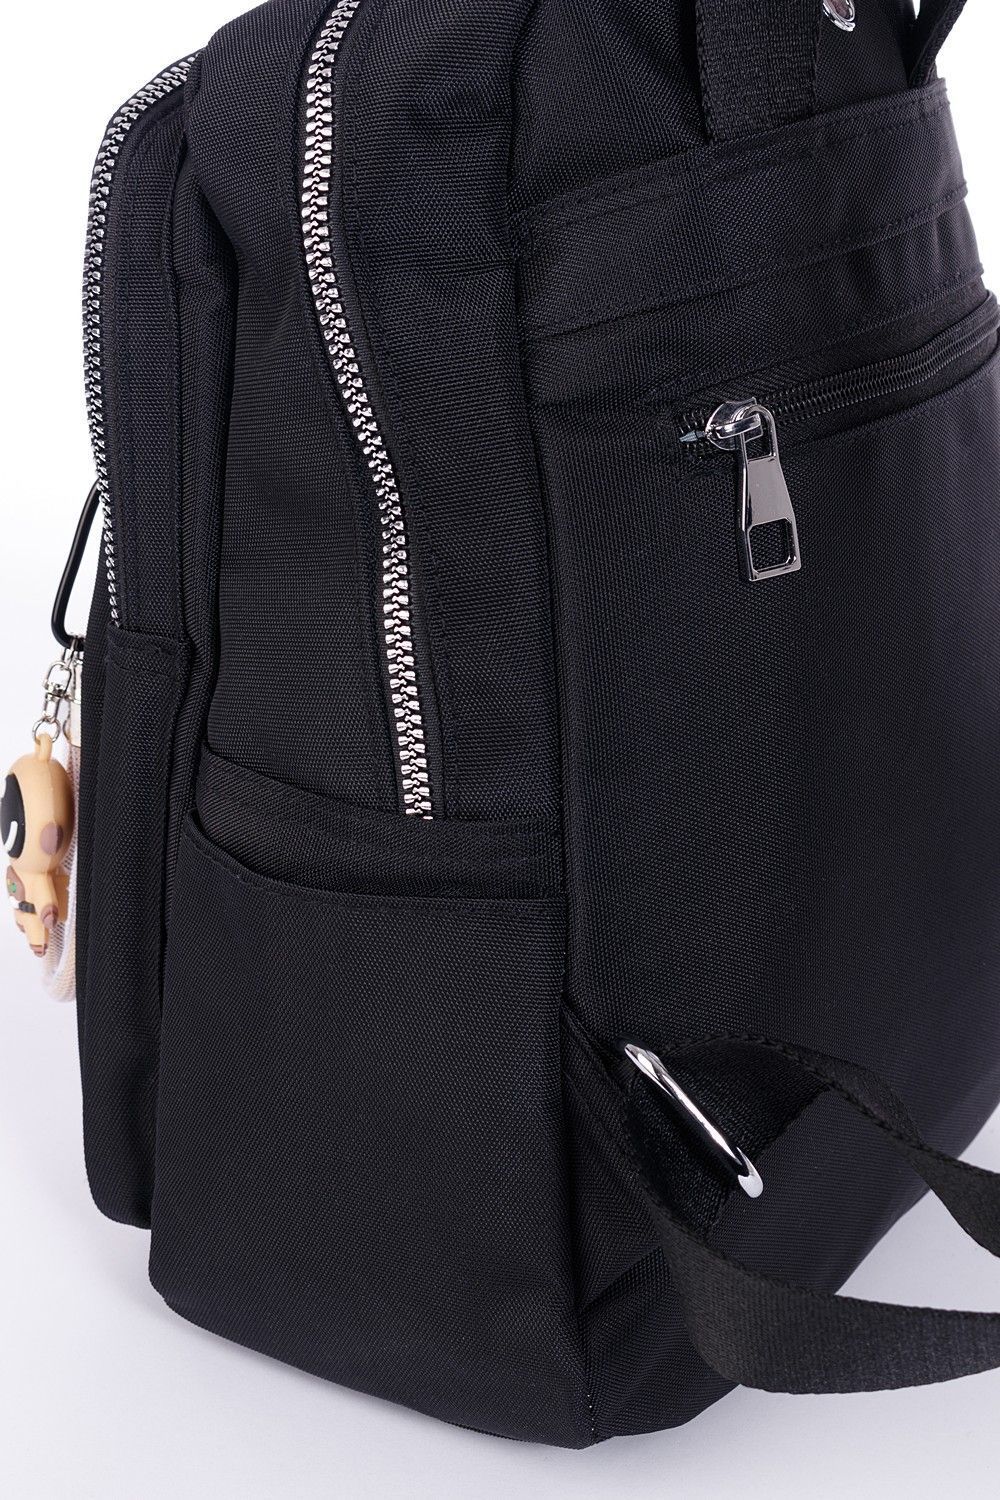 Рюкзак женский городской, черный, со стандартными лямками, 10 л